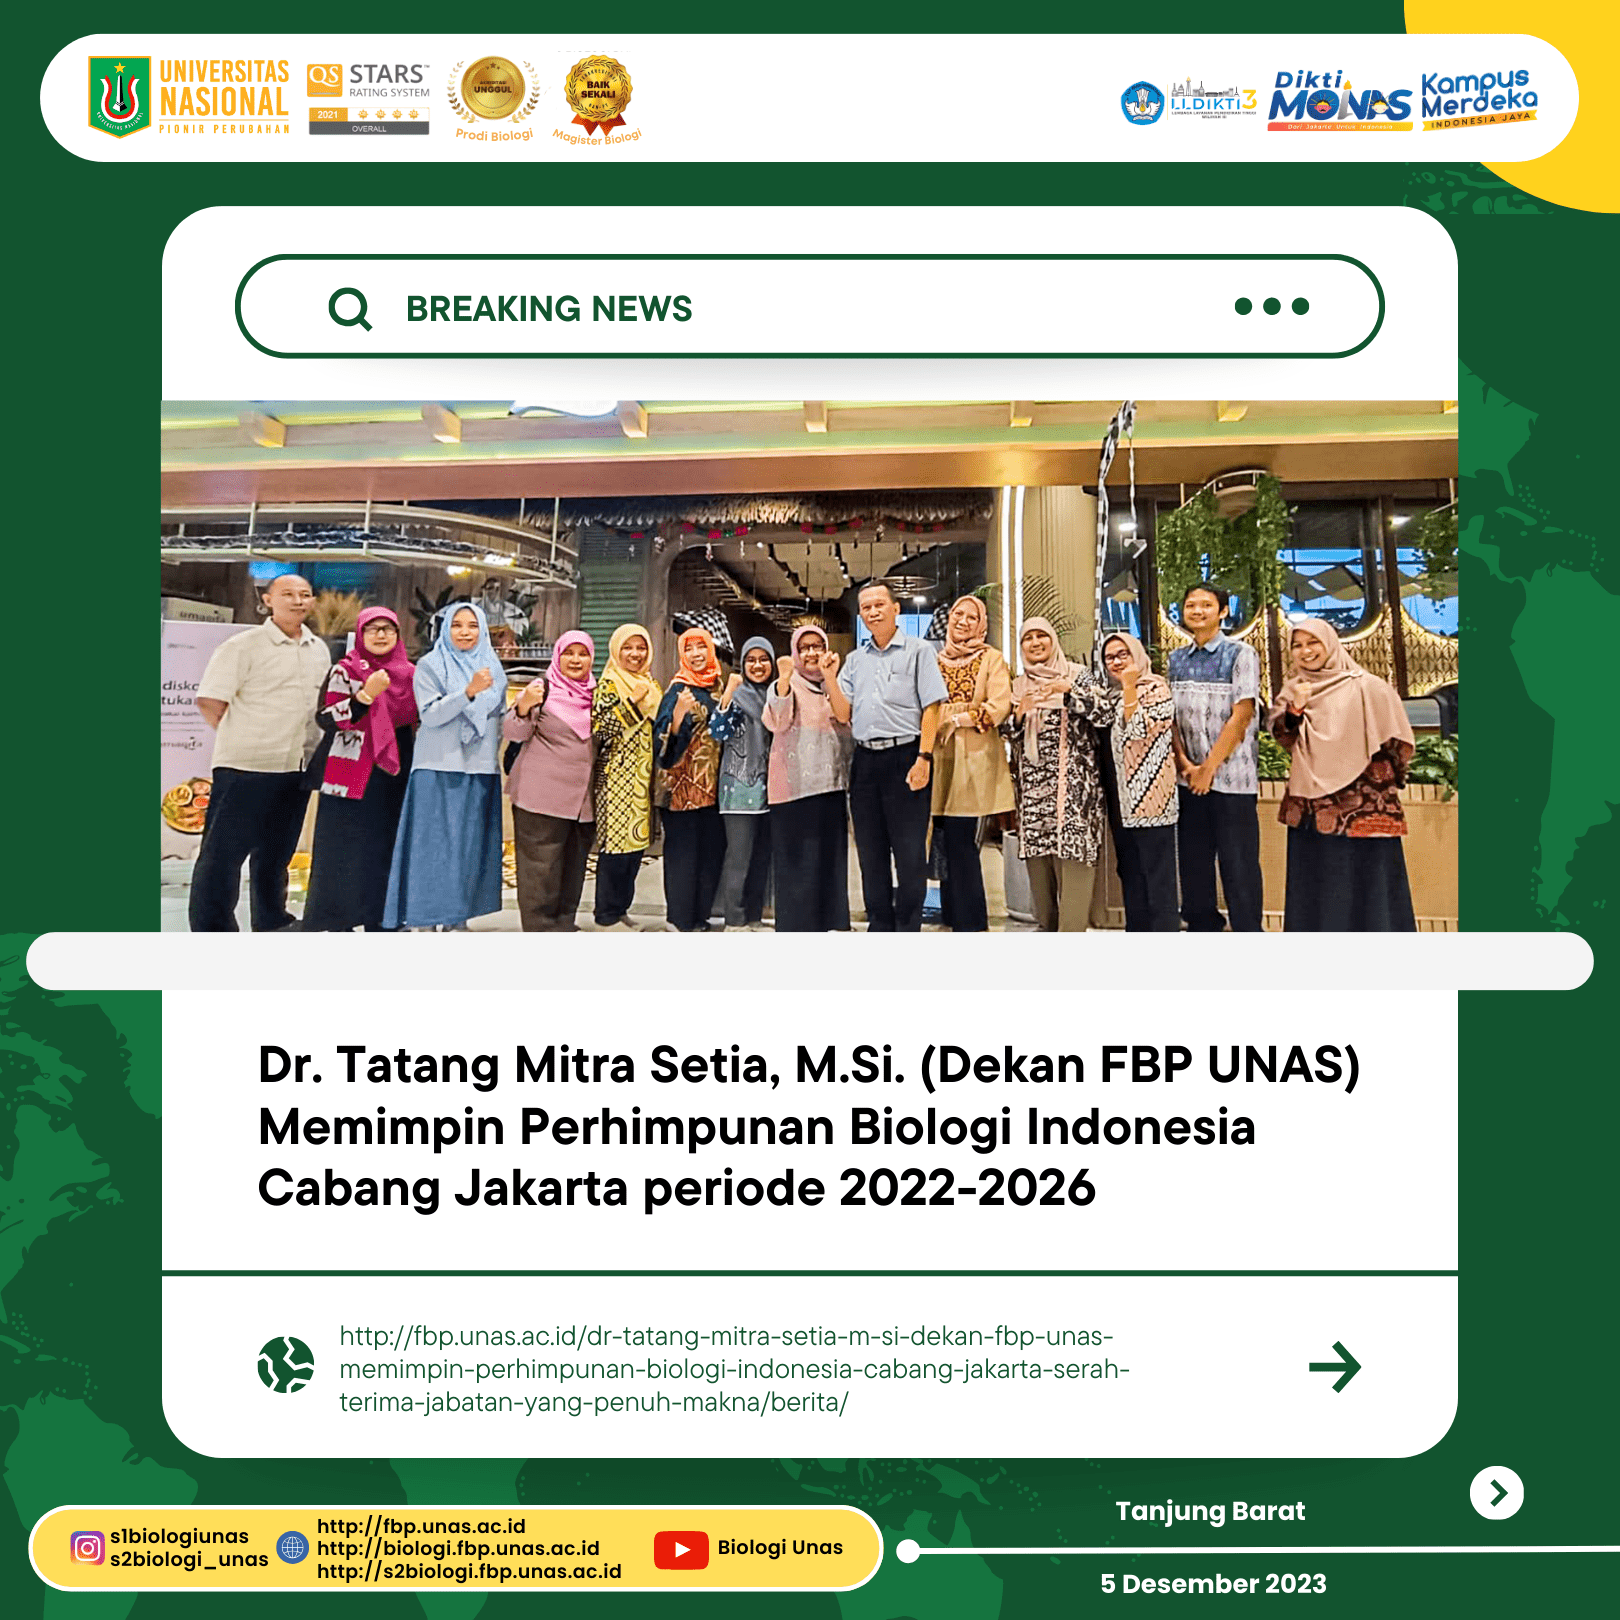 Dr. Tatang Mitra Setia, M.Si. (Dekan FBP UNAS) Memimpin Perhimpunan Biologi Indonesia Cabang Jakarta Periode 2022-2026